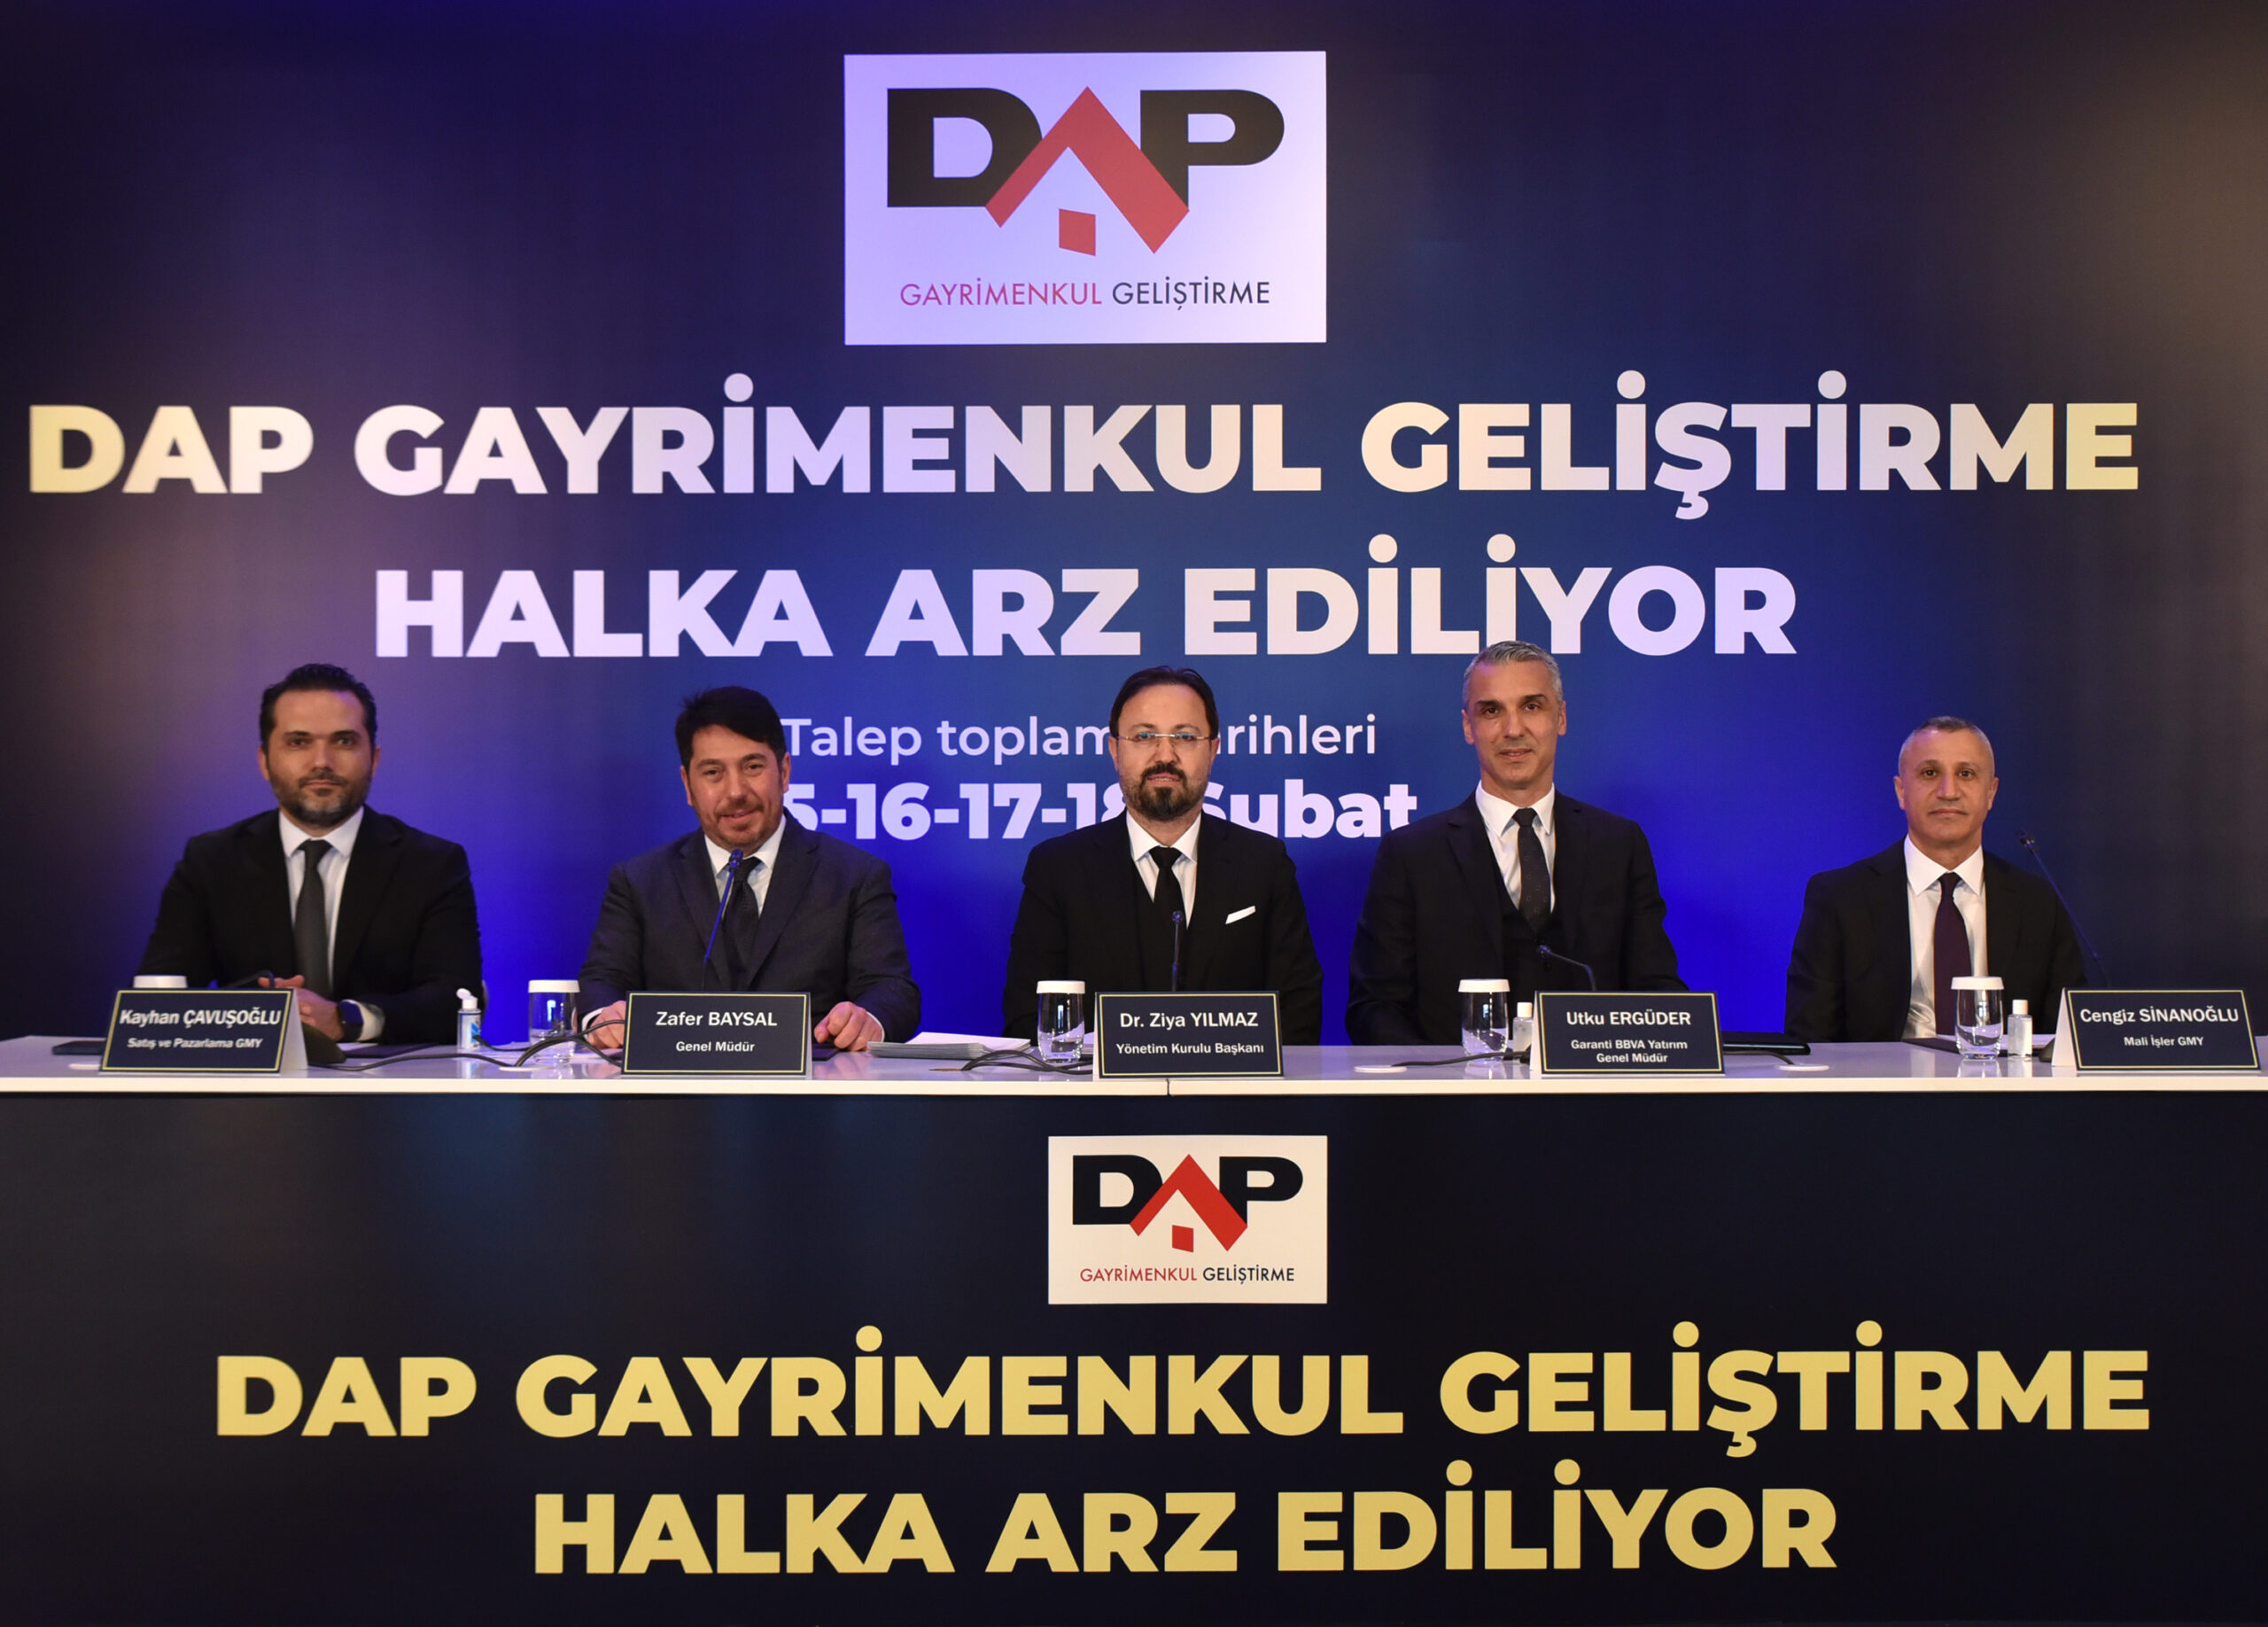 DAP Gayrimenkul Geliştirme halka açılıyor